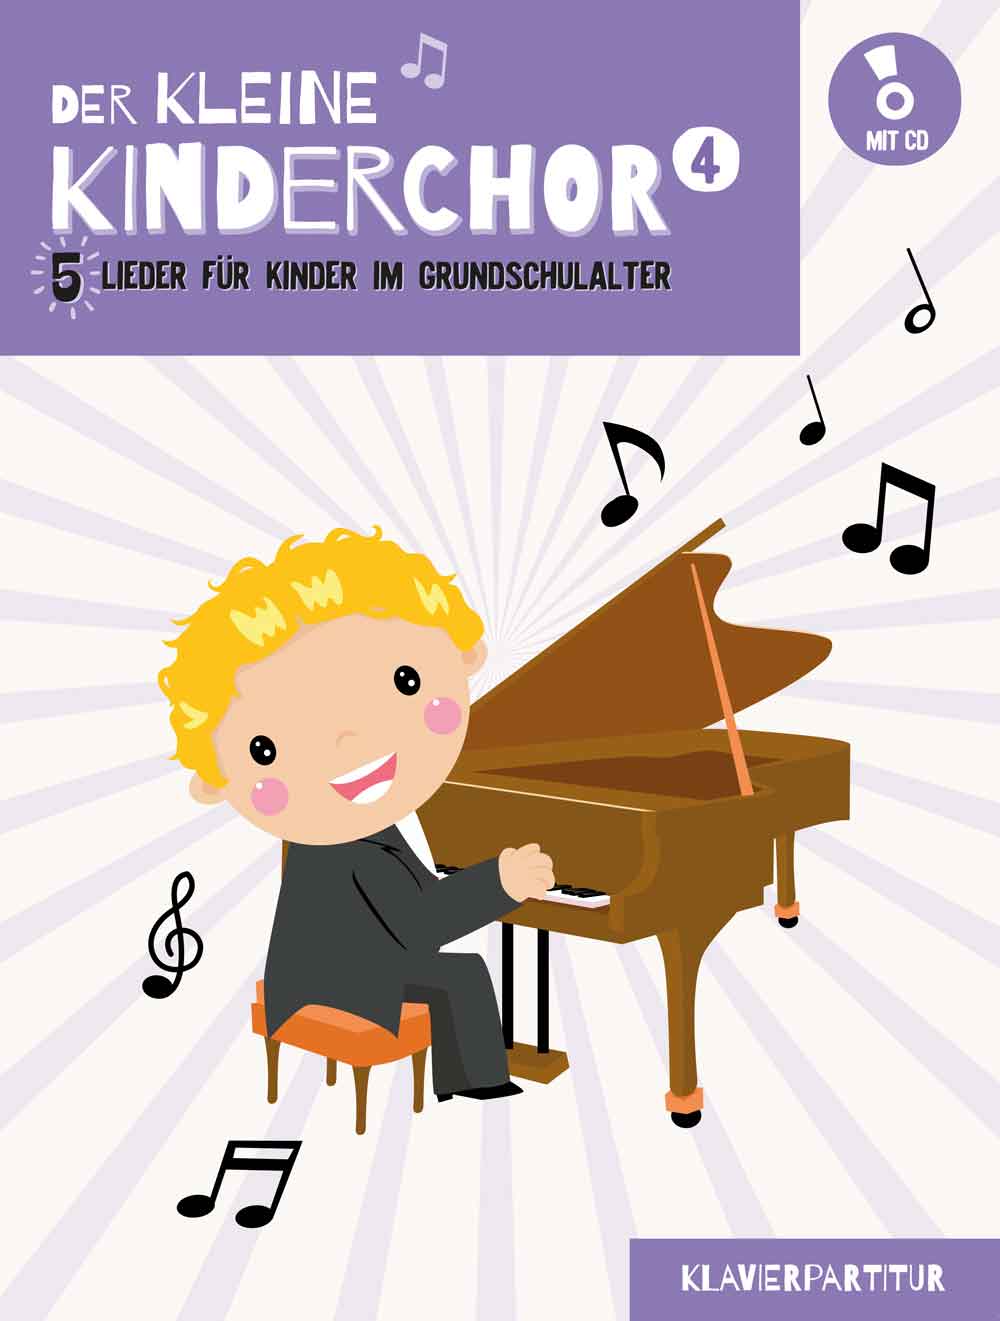 Der kleine Kinderchor 4: 5 Lieder für Kinder im Grundschulalter, Piano Accompaniment